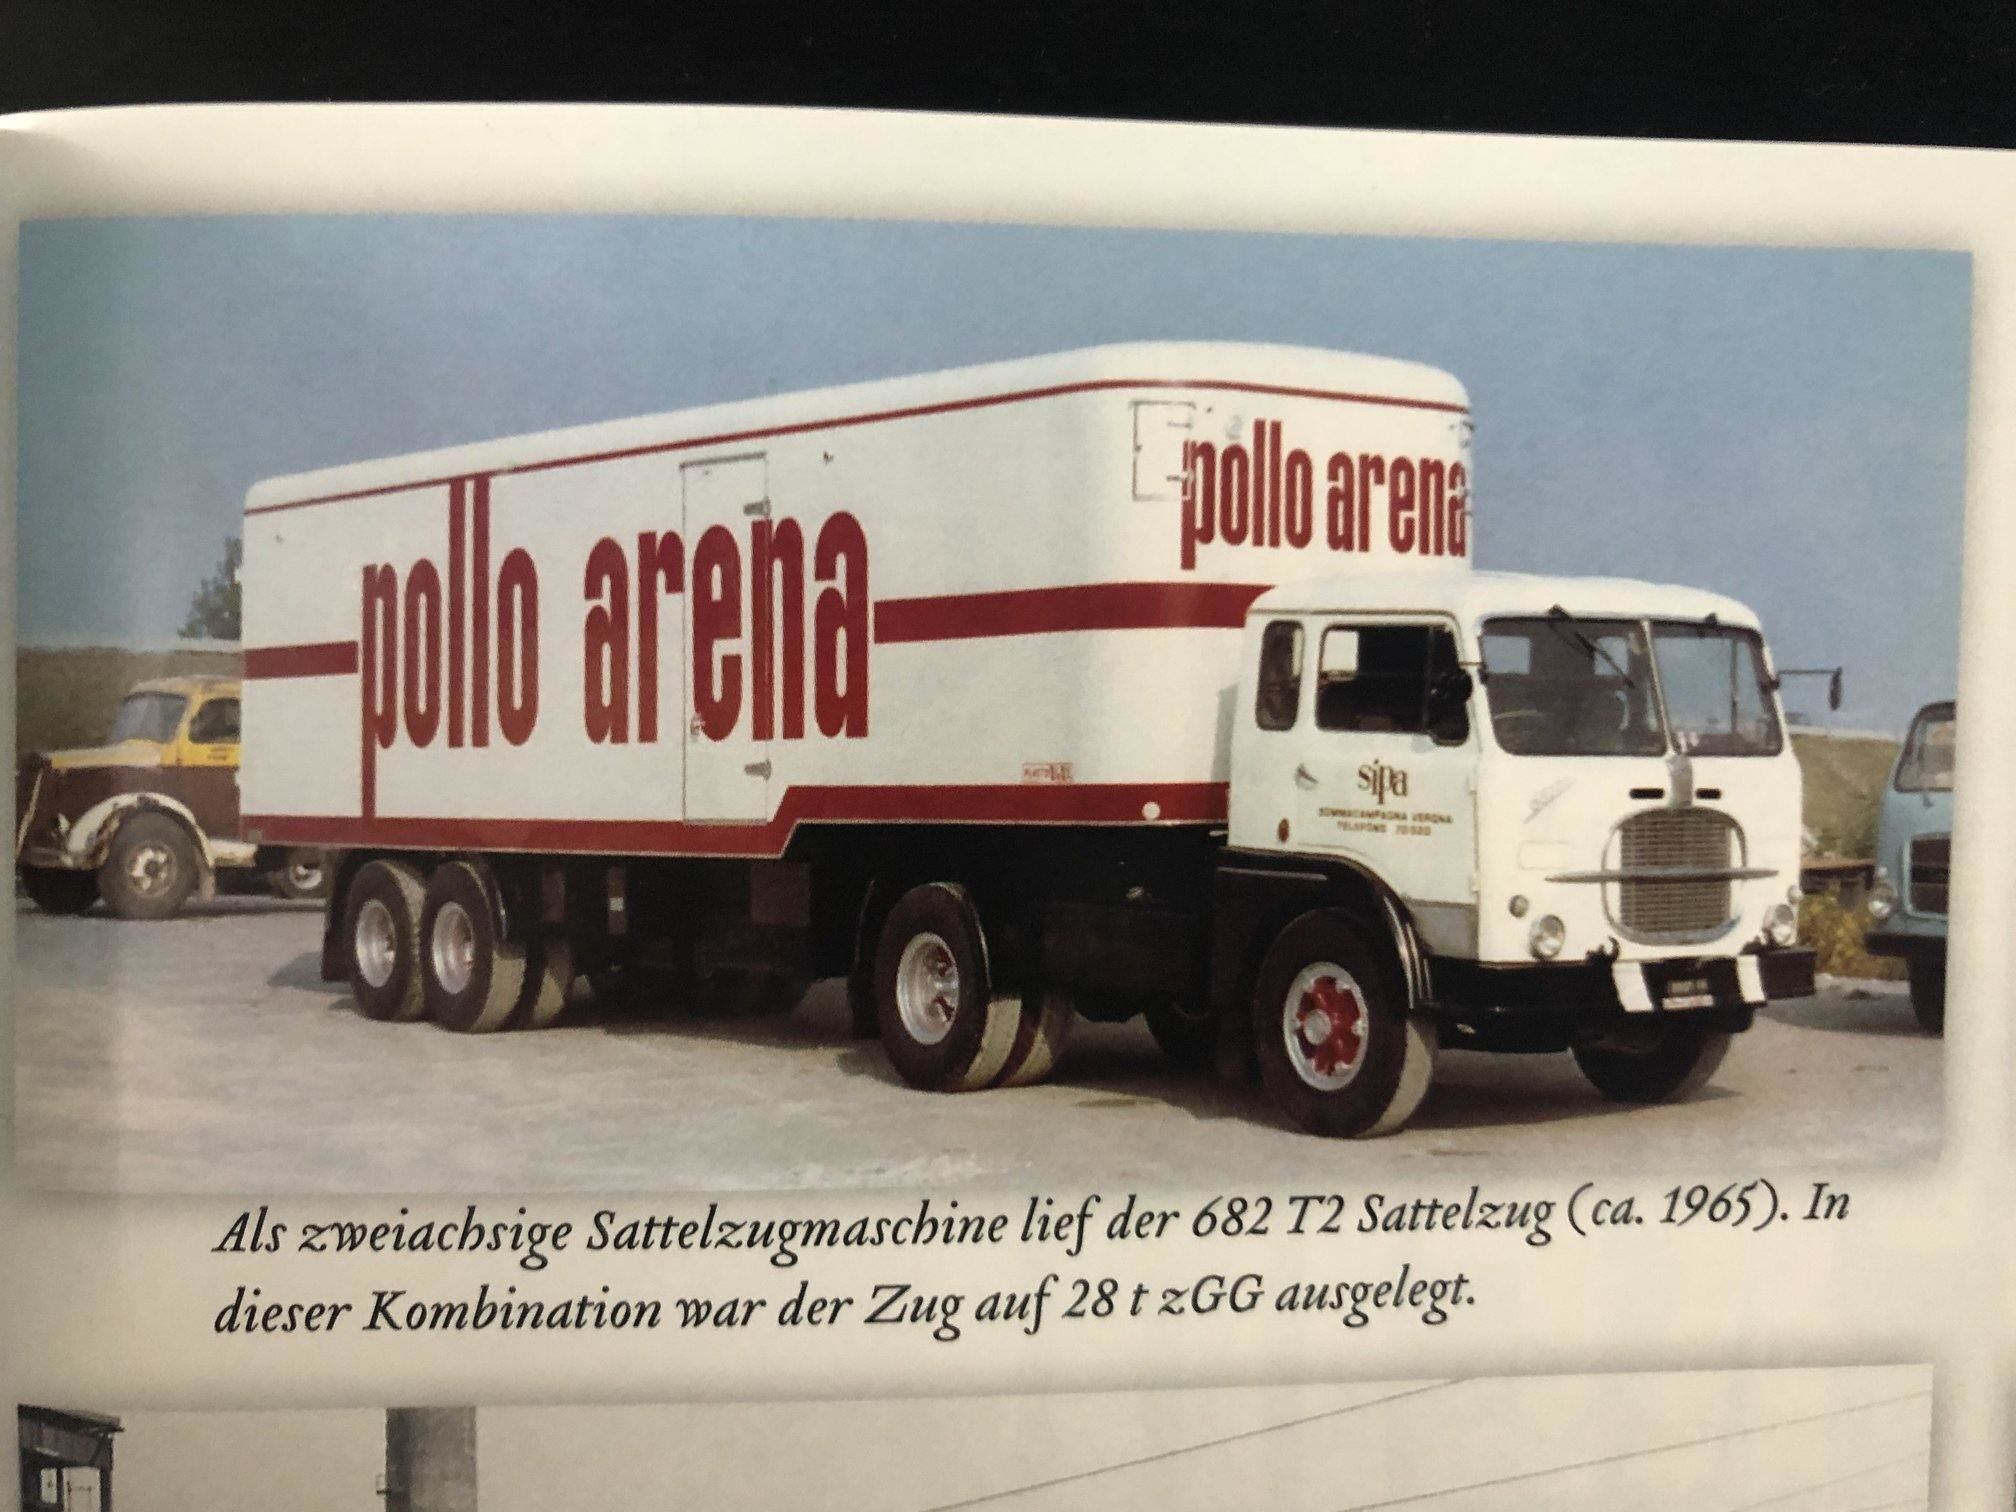 Fiat 682 Polo Arena.jpg